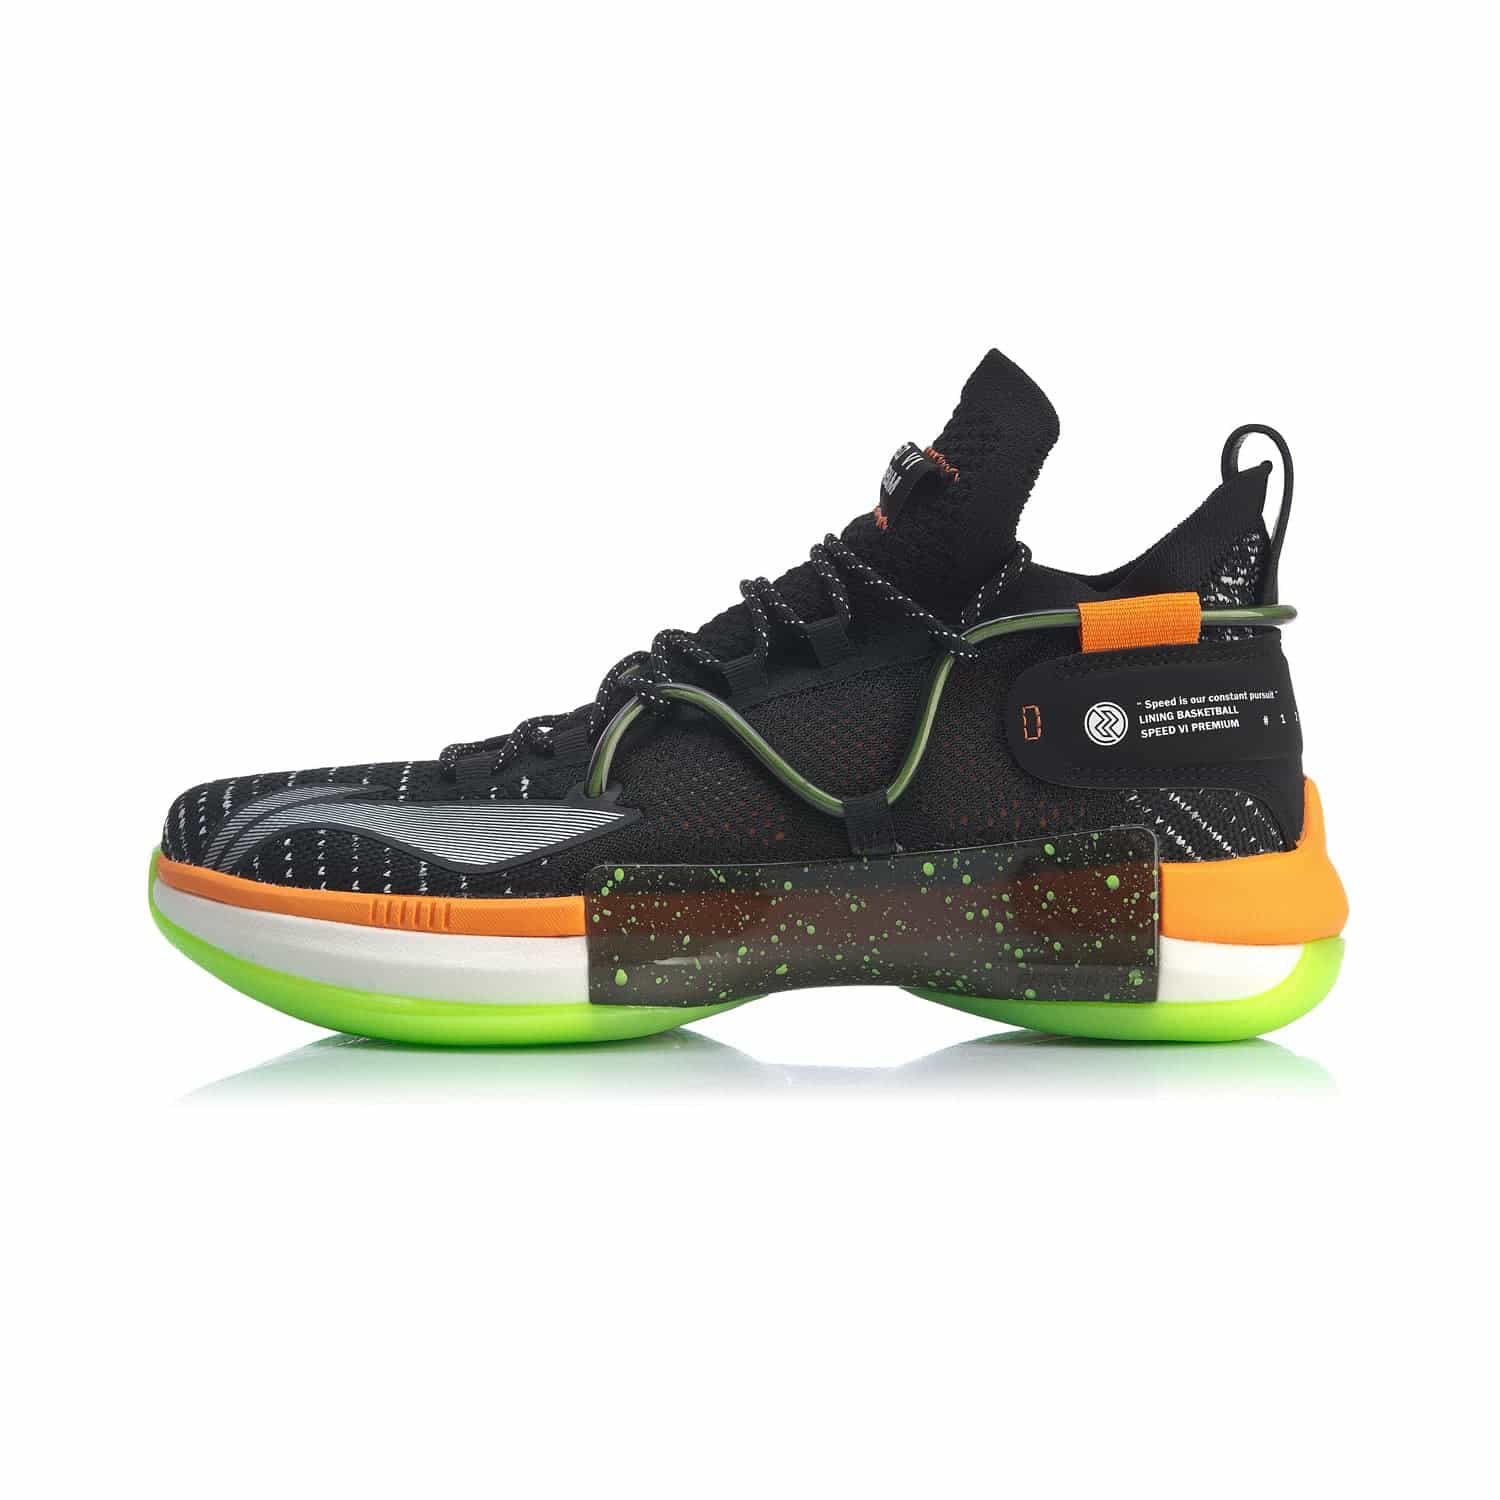 閃擊 VI Premium 實戰籃球鞋 - 標準黑